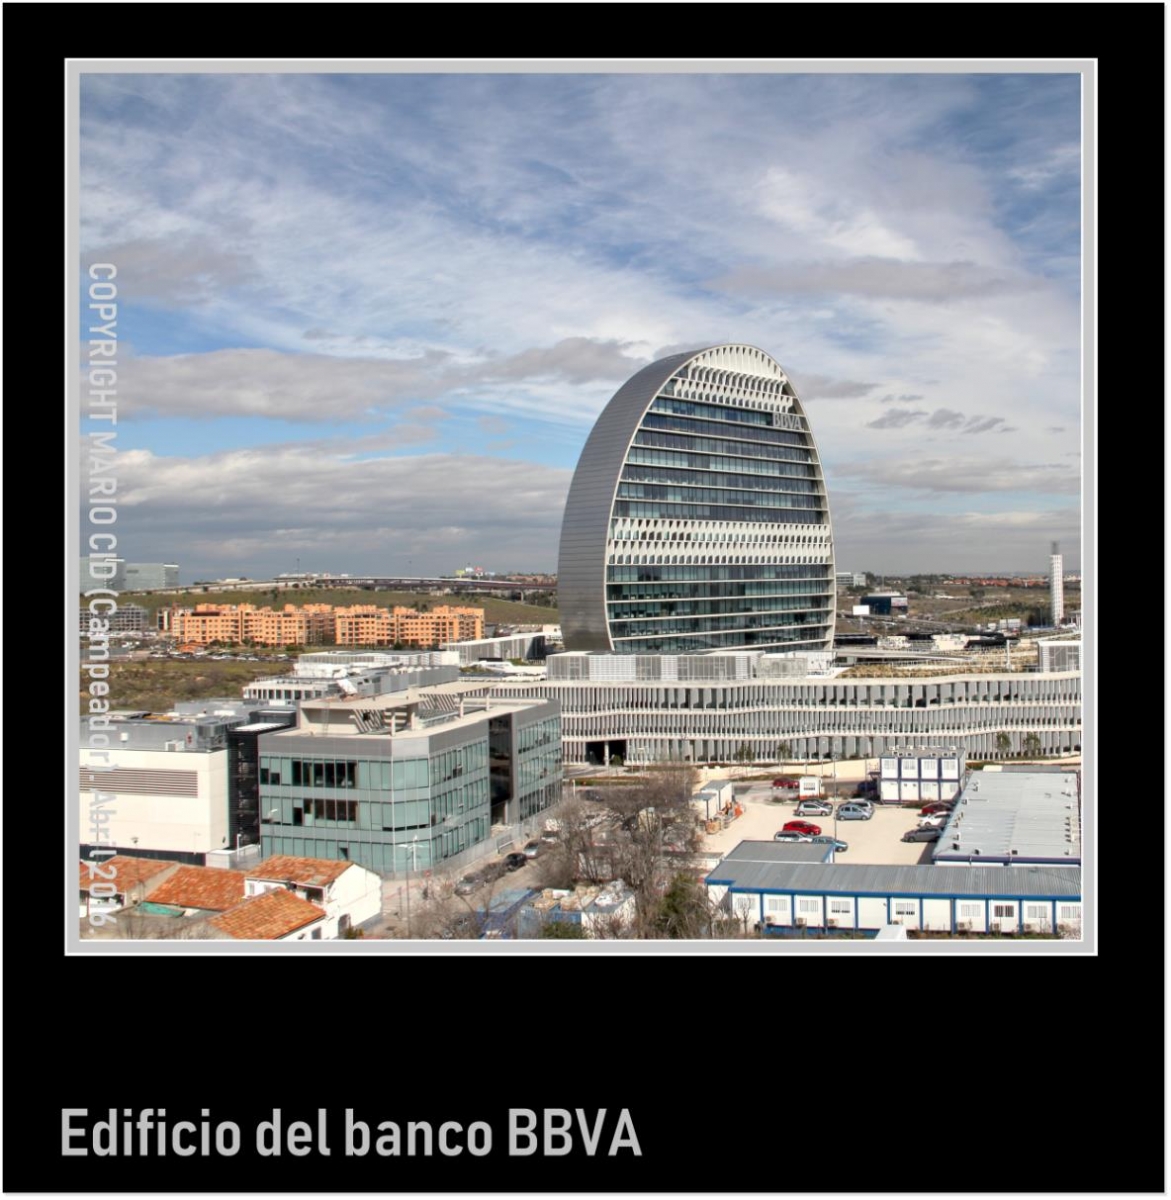 Edificio del banco BBVA - BBVA bank building. Photo by Campeador.